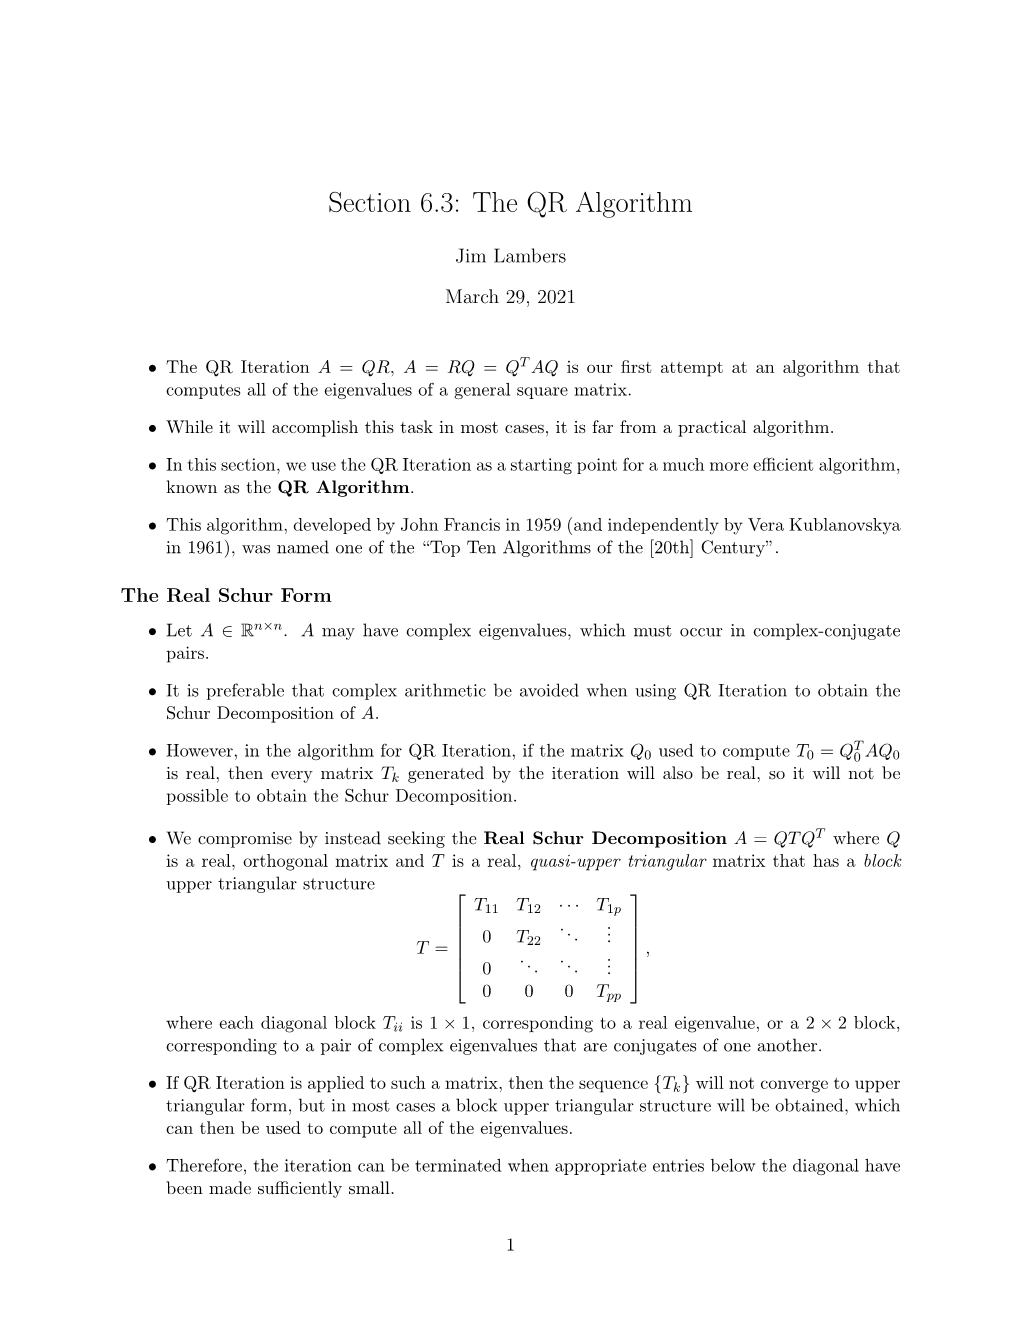 Section 6.3: the QR Algorithm